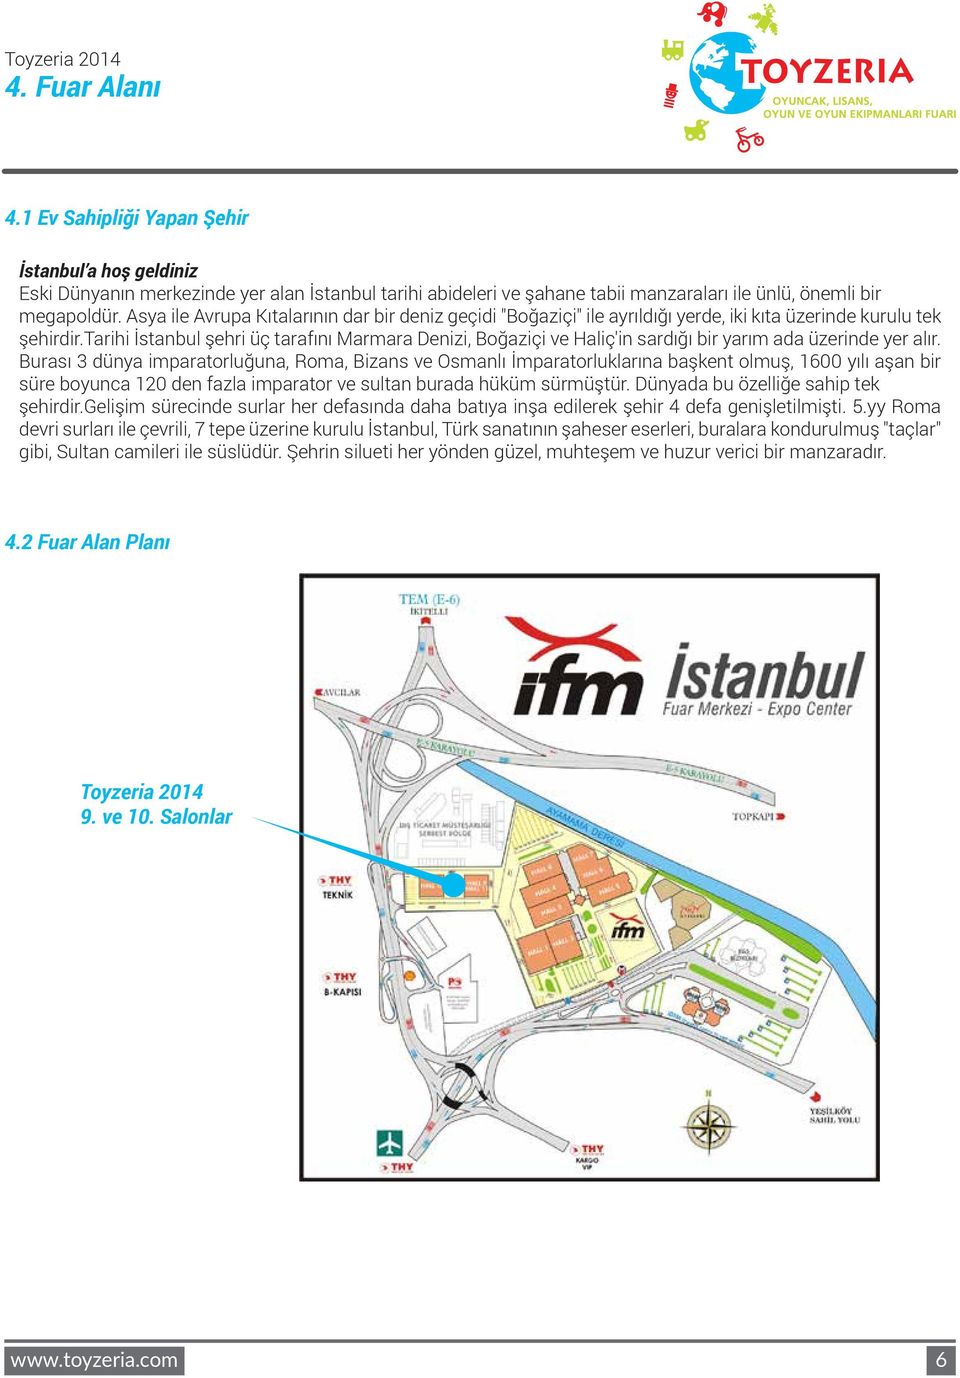 i İstanbul şehri üç tarafını Marmara Denizi, Boğaziçi ve Haliç'in sardığı bir yarım ada üzerinde yer alır.